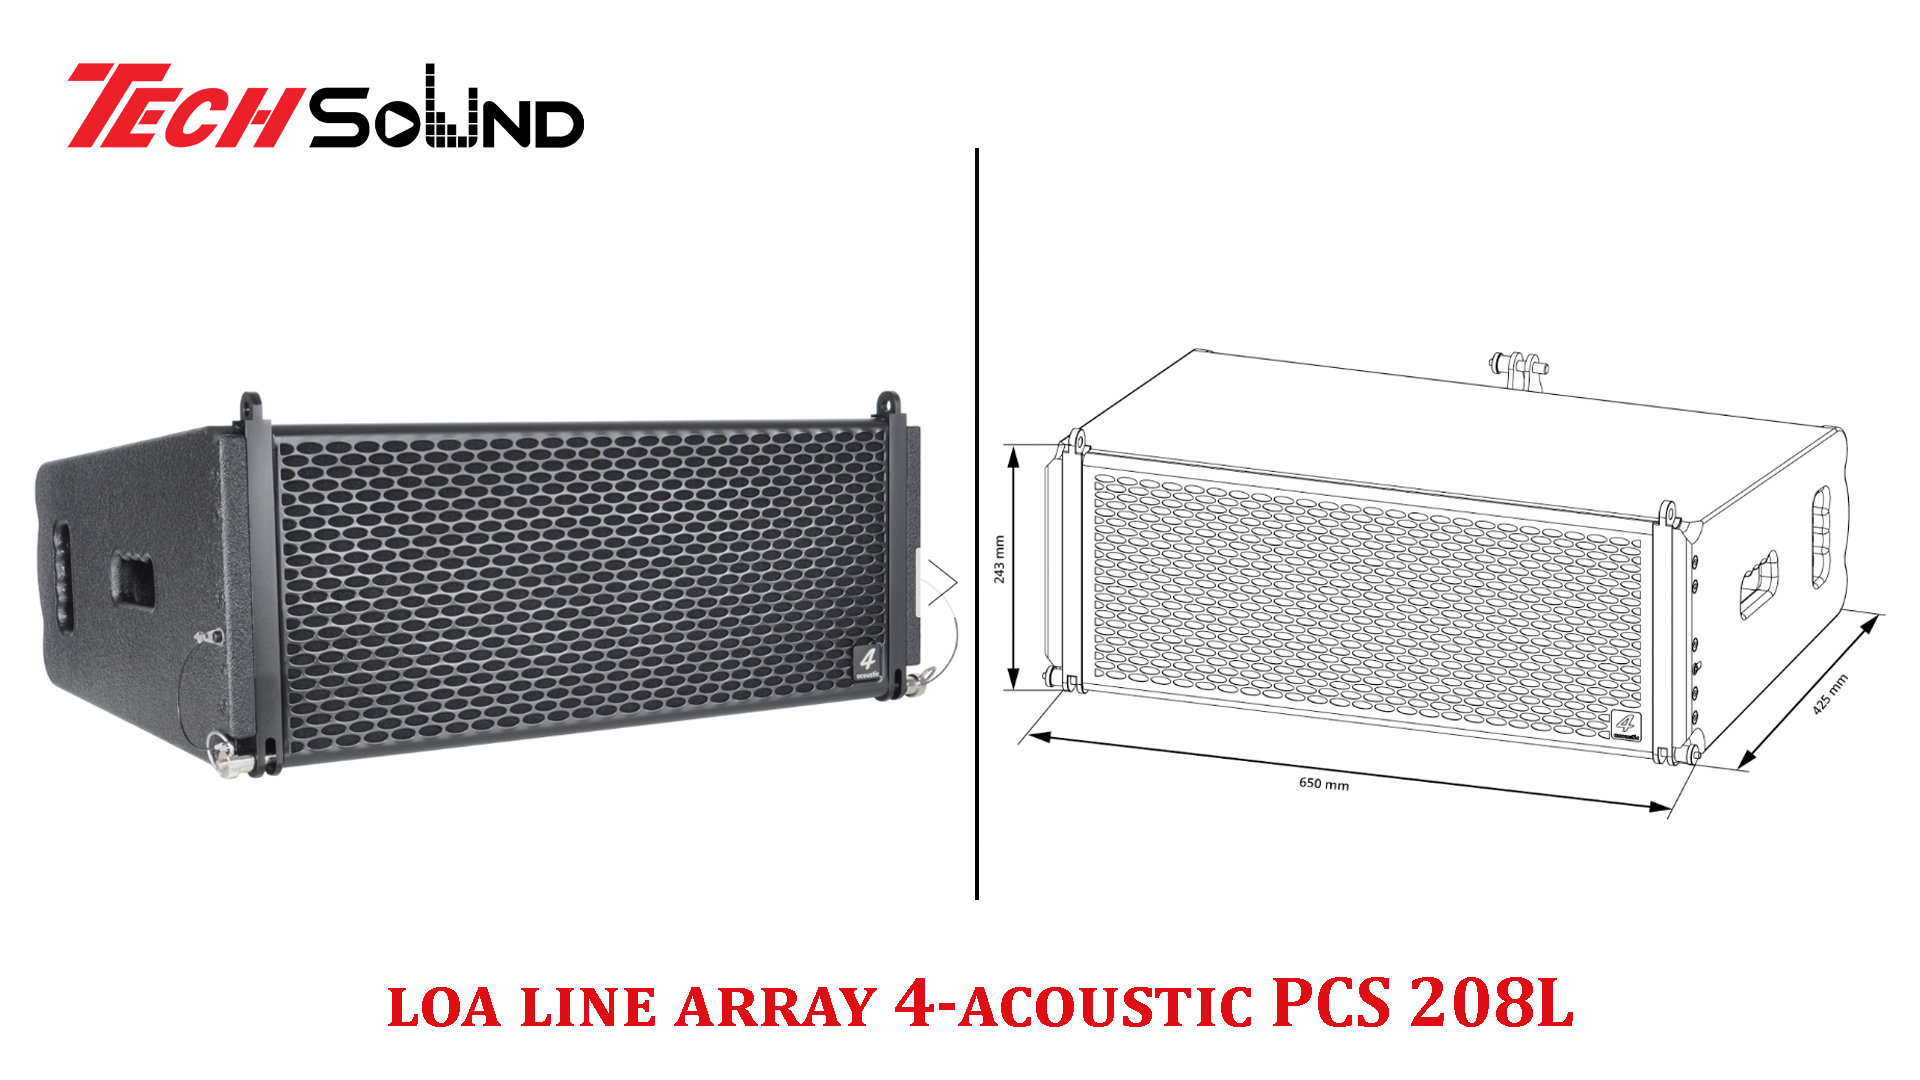 Loa line array 4-acoustic PCS 208L